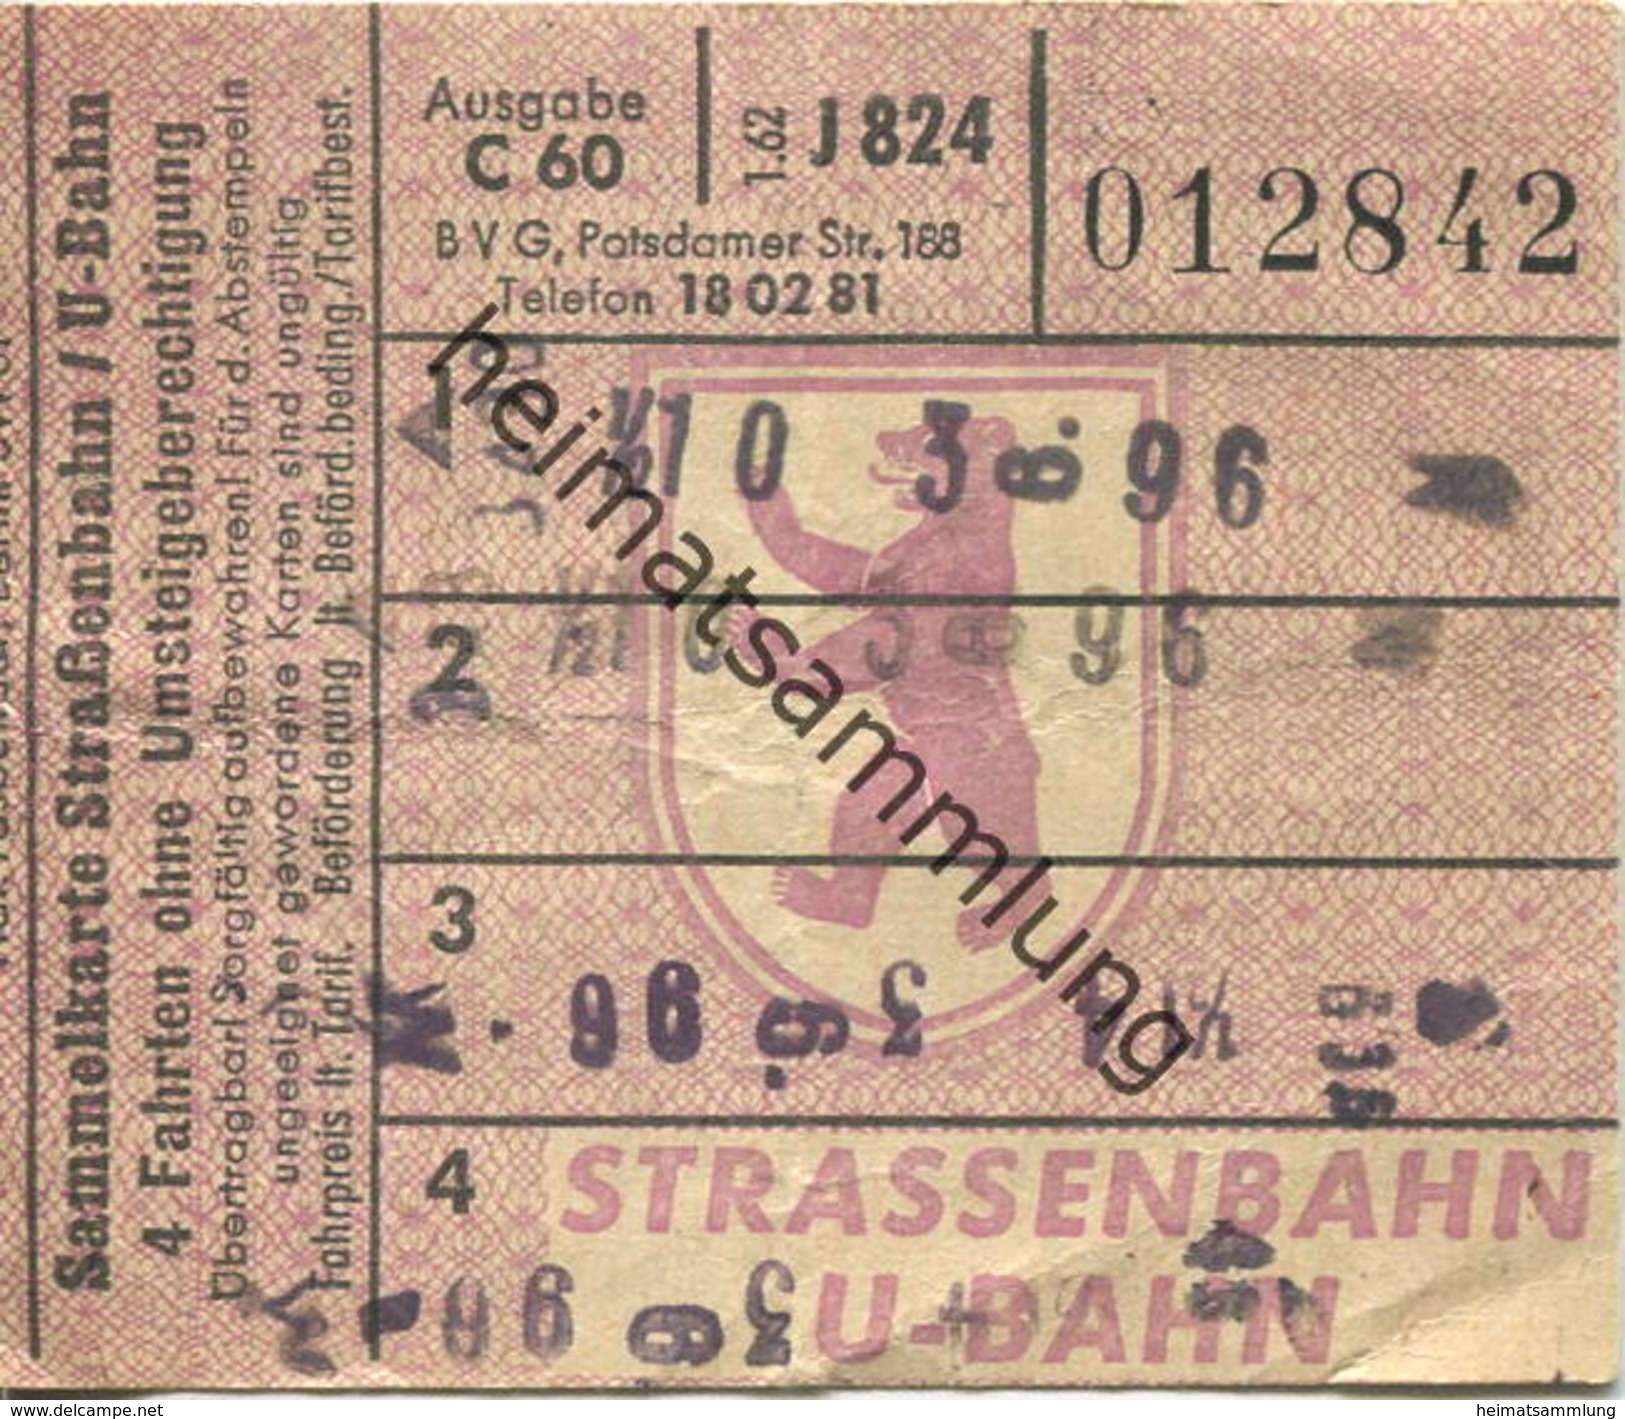 Deutschland - Berlin - BVG - Sammelkarte - Strassenbahn / U-Bahn 4 Fahrten Ohne Umsteigeberechtigung 1962 - Europe